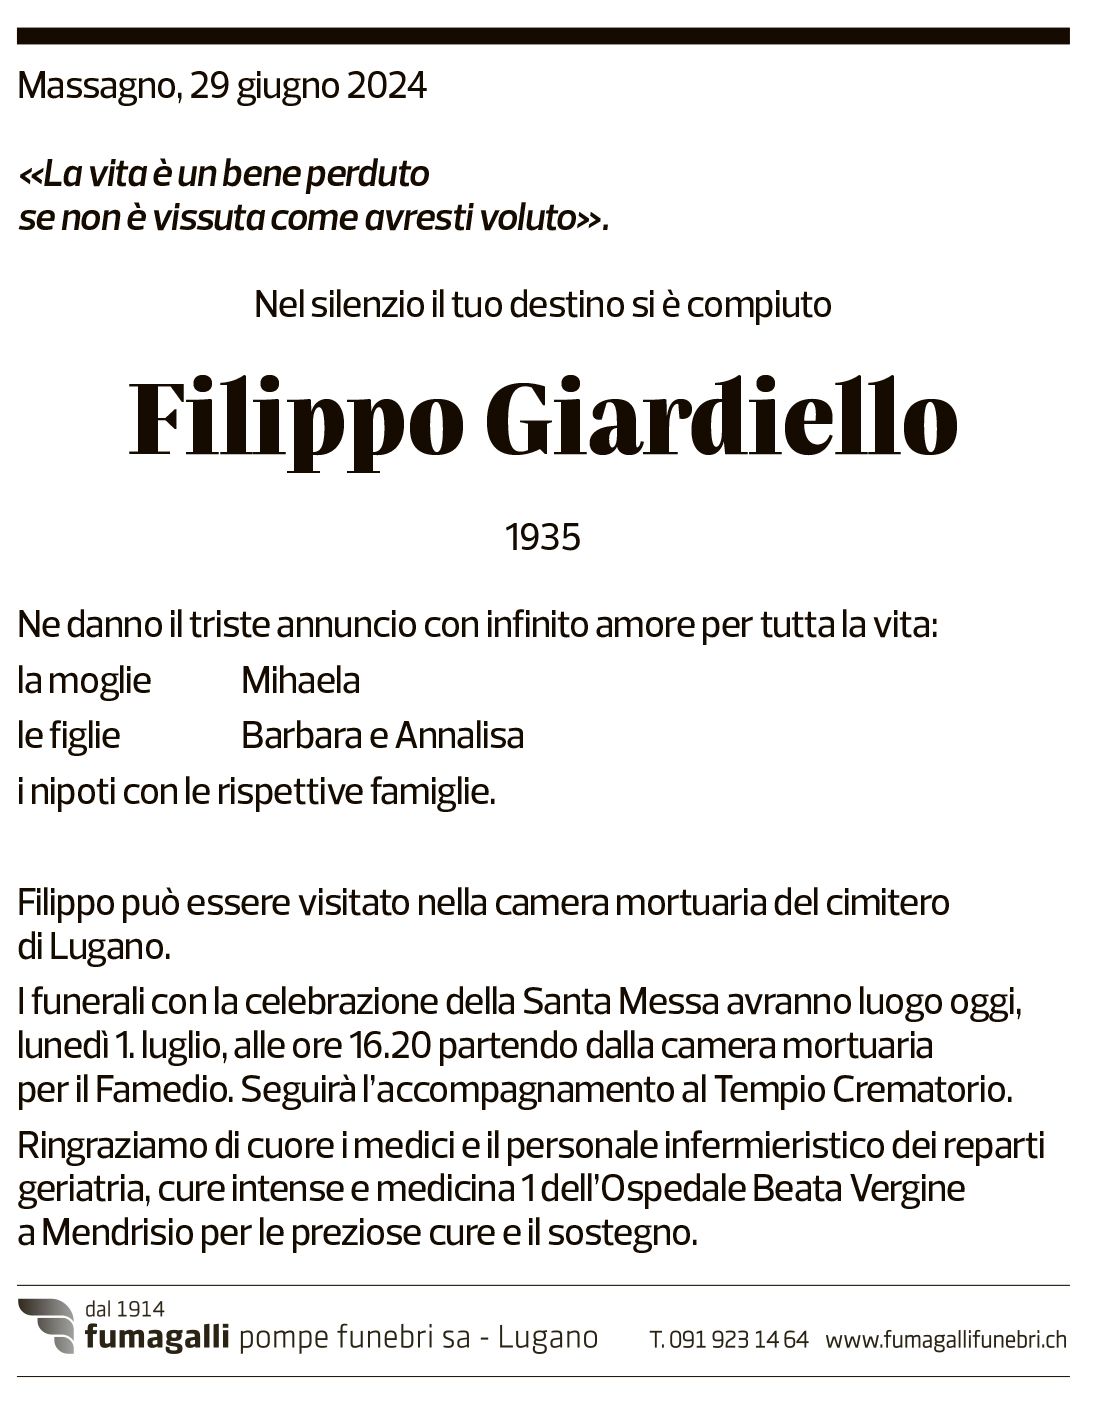 Annuncio funebre Filippo Giardiello